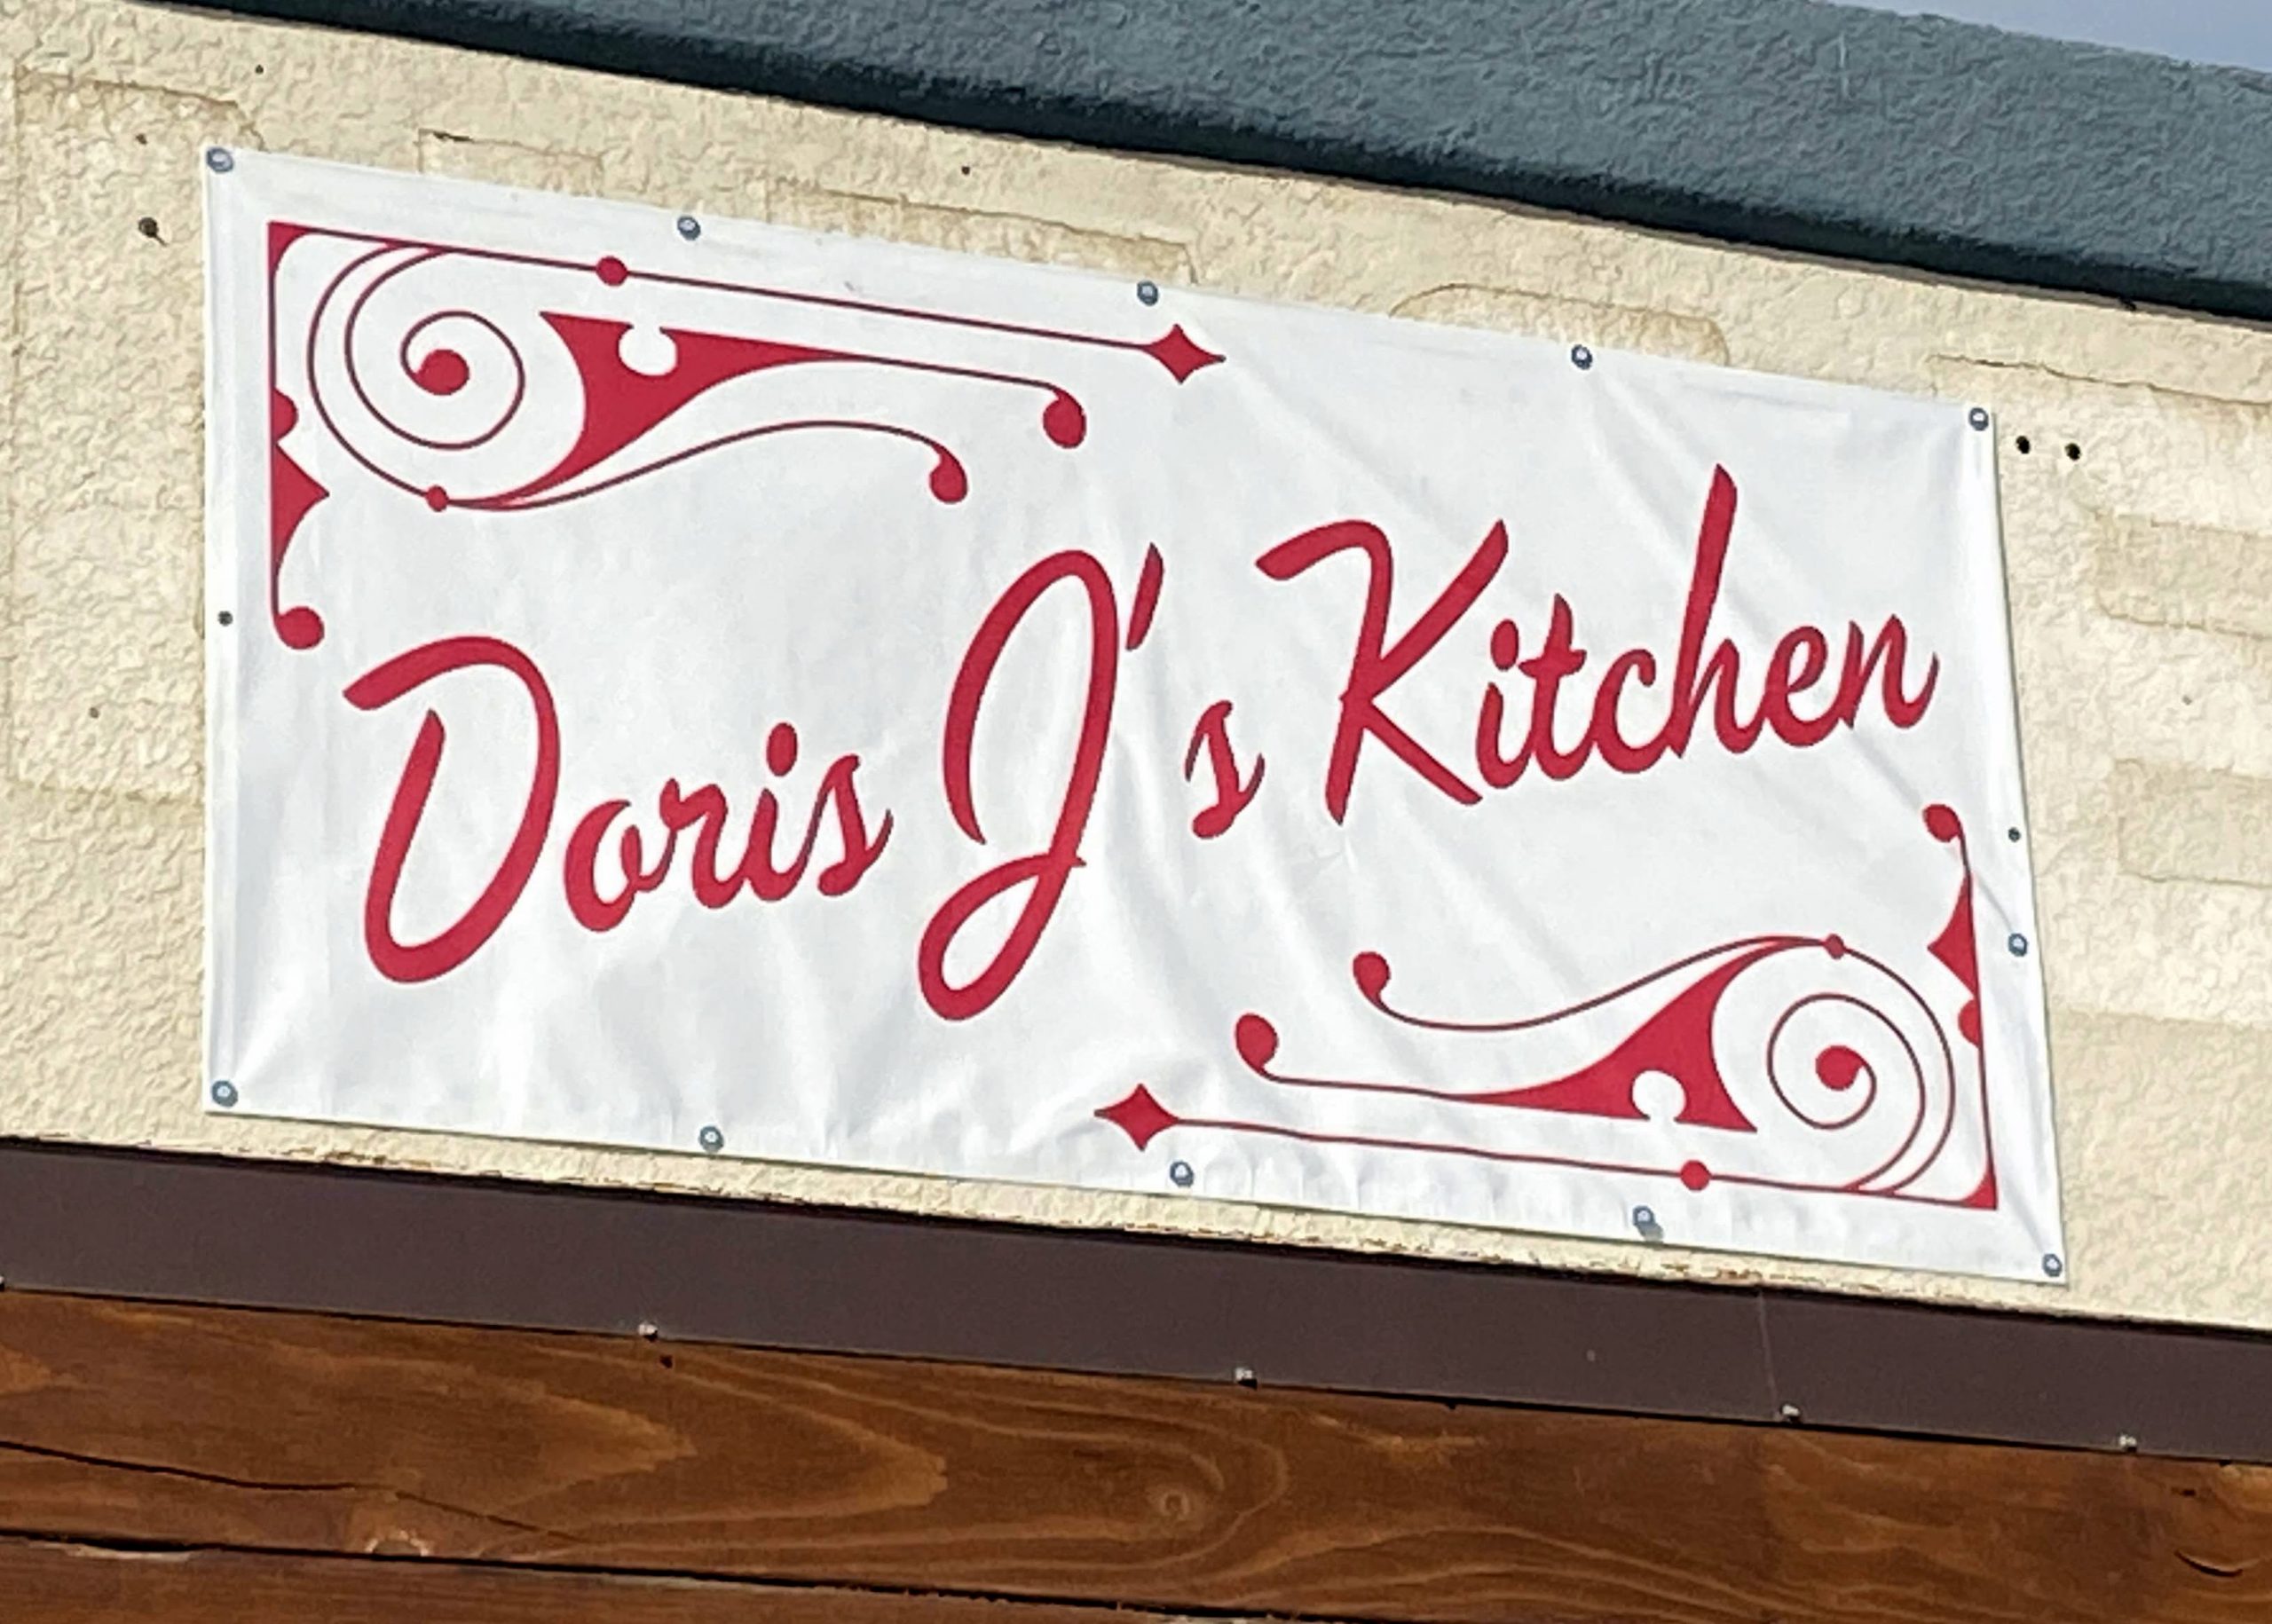 Doris J S Kitchen Menu Midland Midland Menus